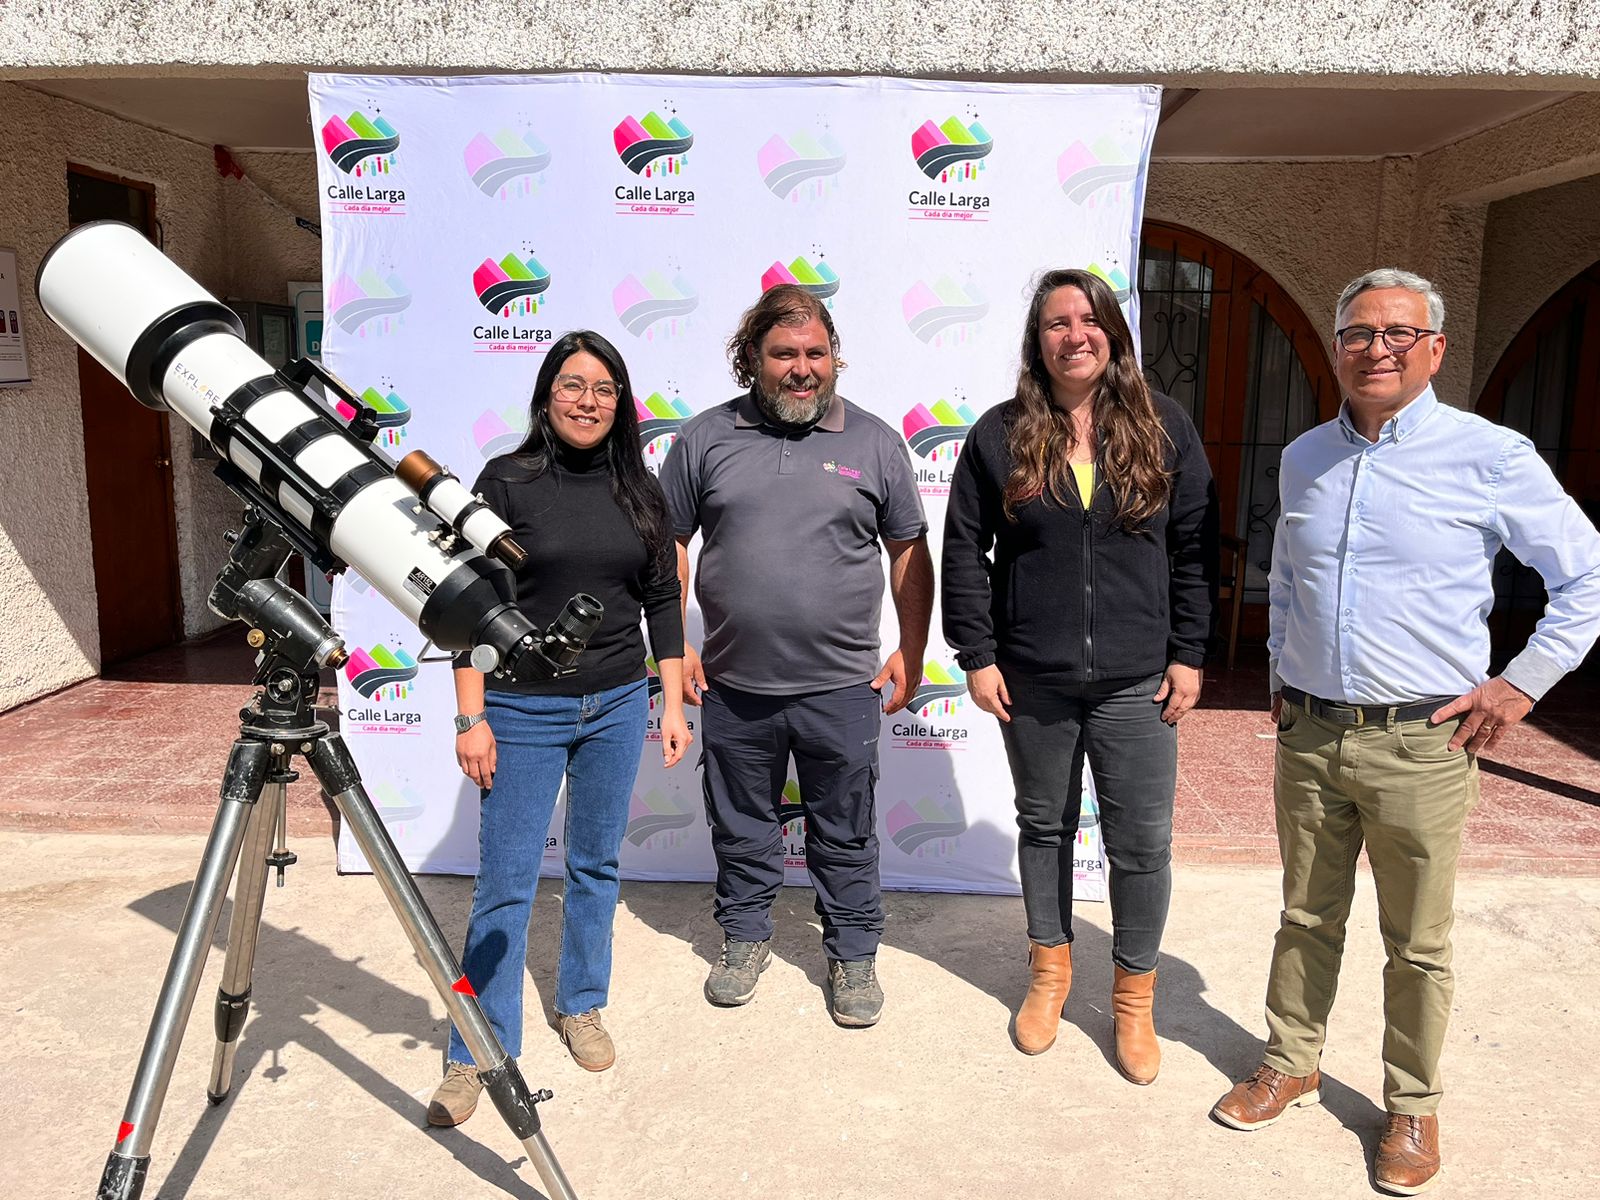 CALLE LARGA: Municipalidad de Calle Larga invita a la comunidad al primer seminario de Astroturismo y turismo Rural